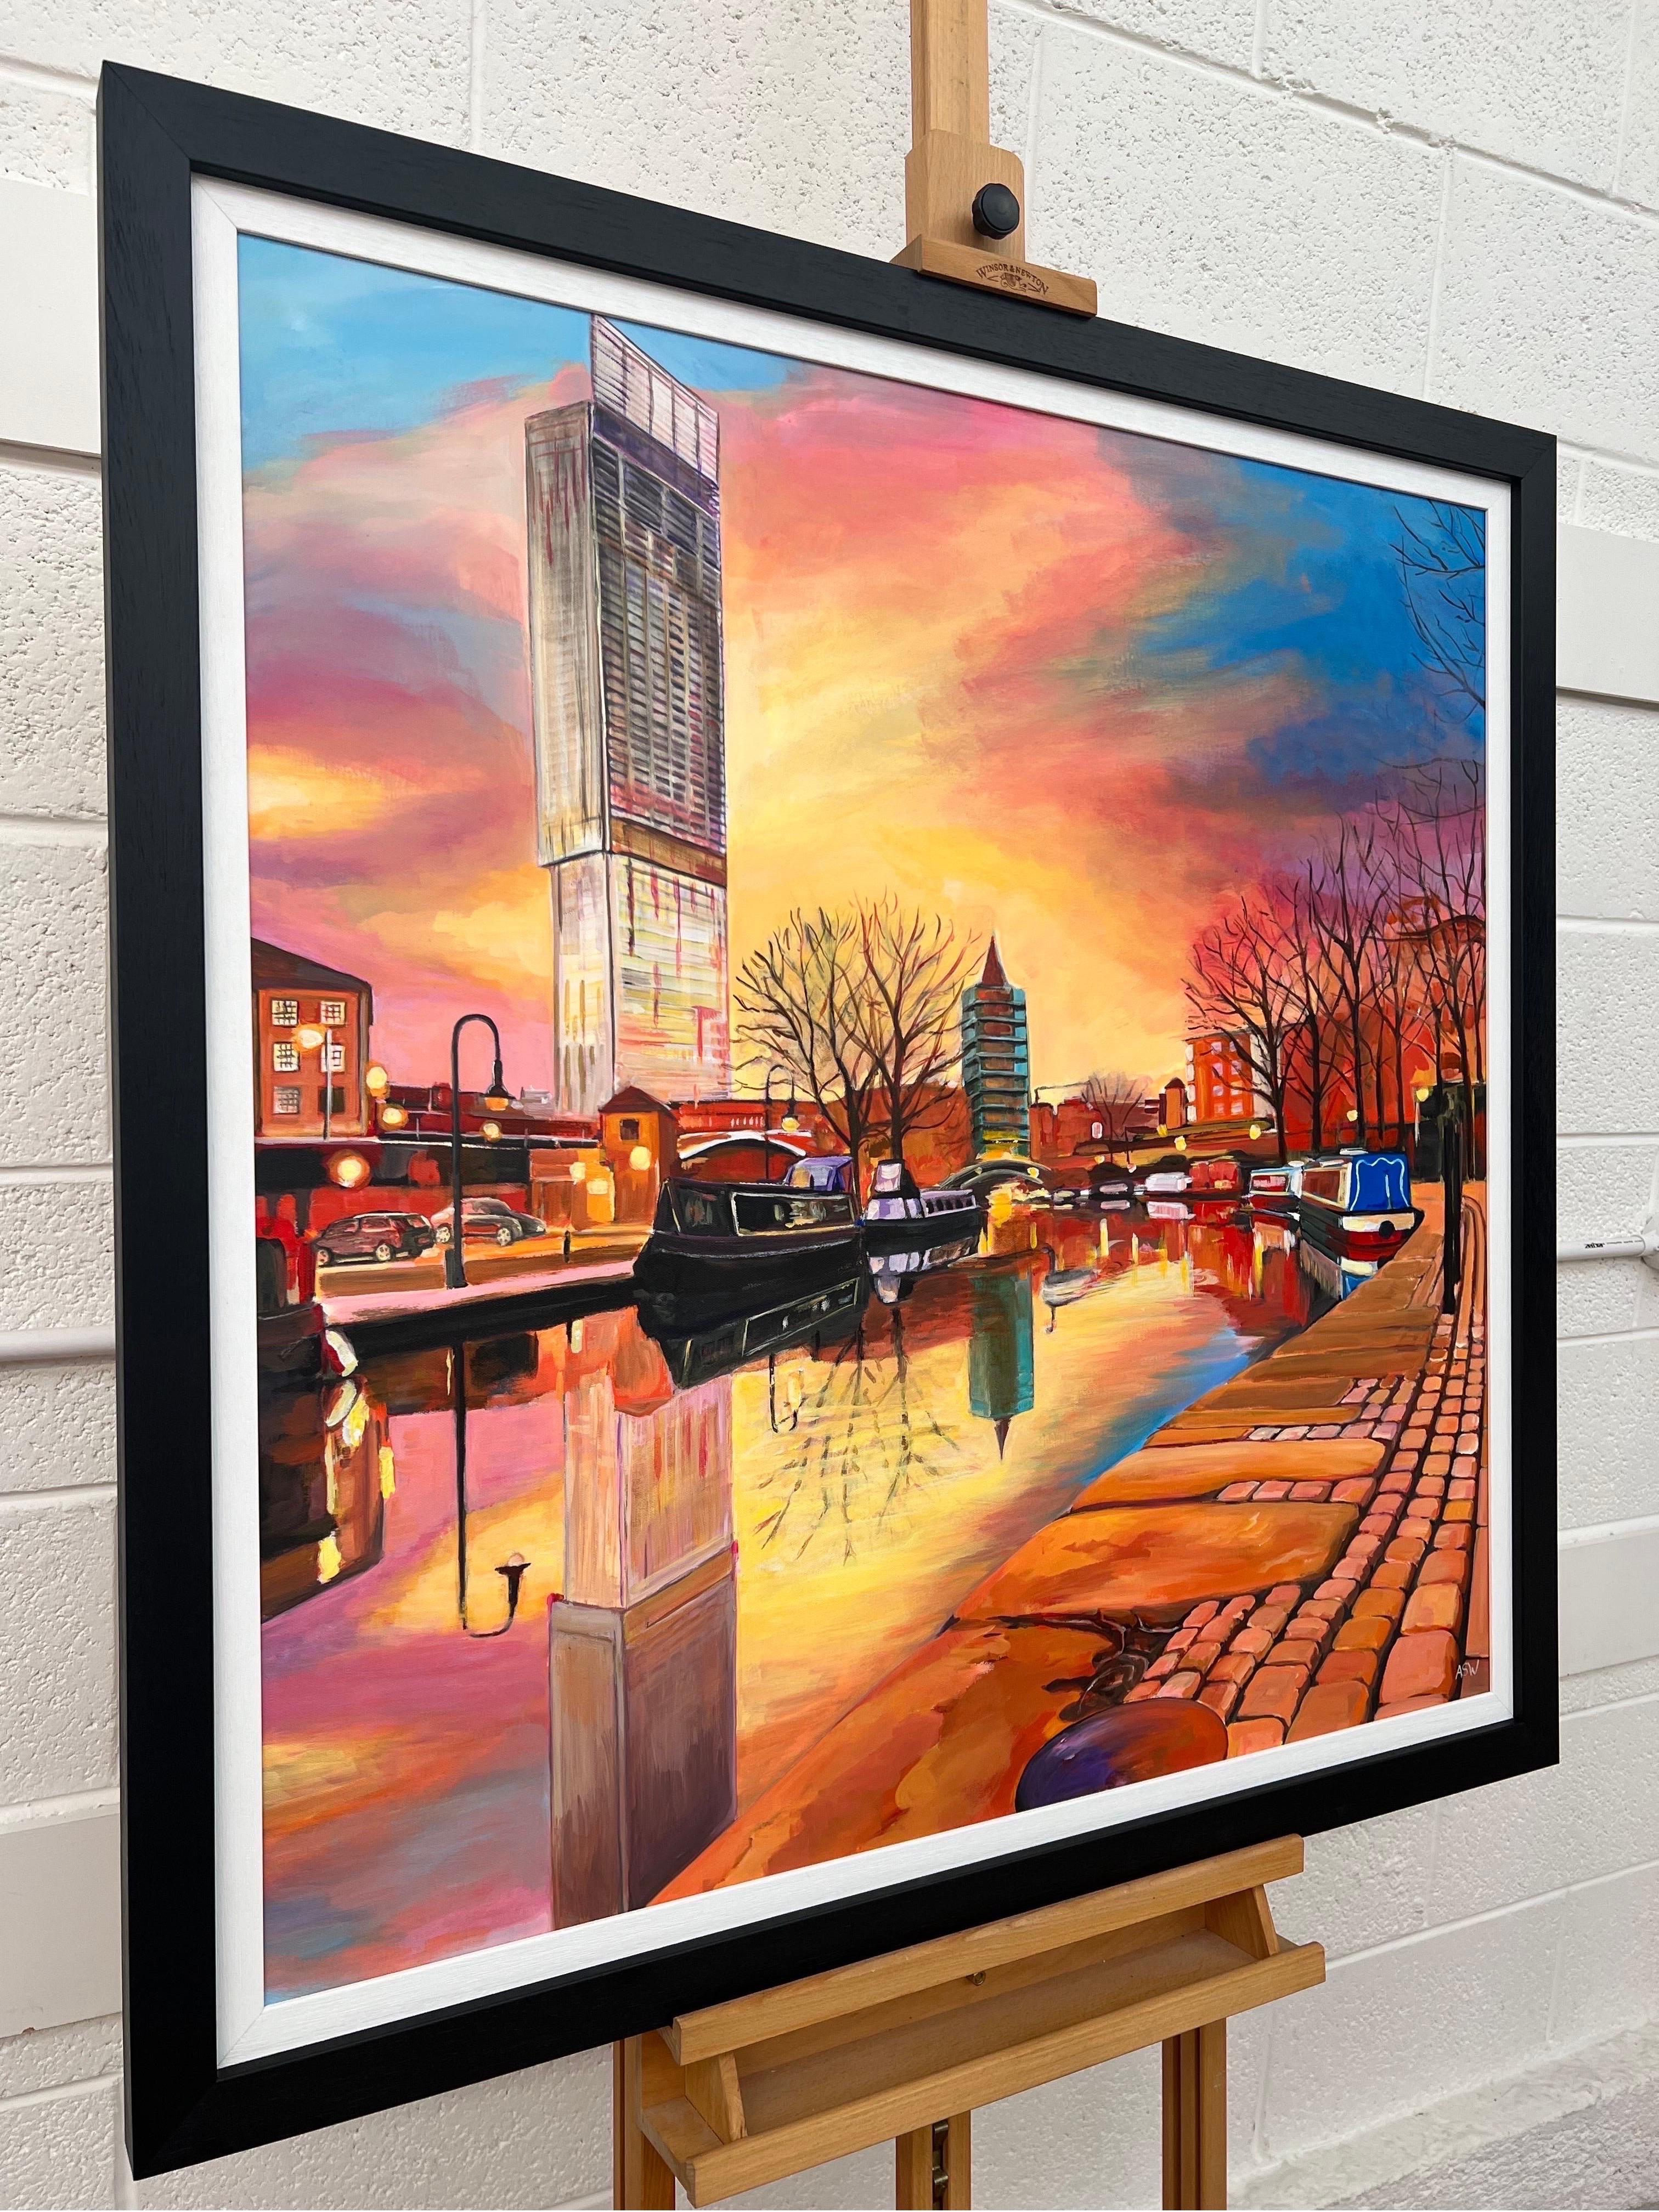 Ein Originalgemälde der Bridgewater-Kanal-Szene in der Industriestadt Manchester, England, von der britischen Stadtbildkünstlerin Angela Wakefield. Sie fängt die sich verändernde Natur Manchesters ein, sowohl die alte als auch die neue. Die typisch